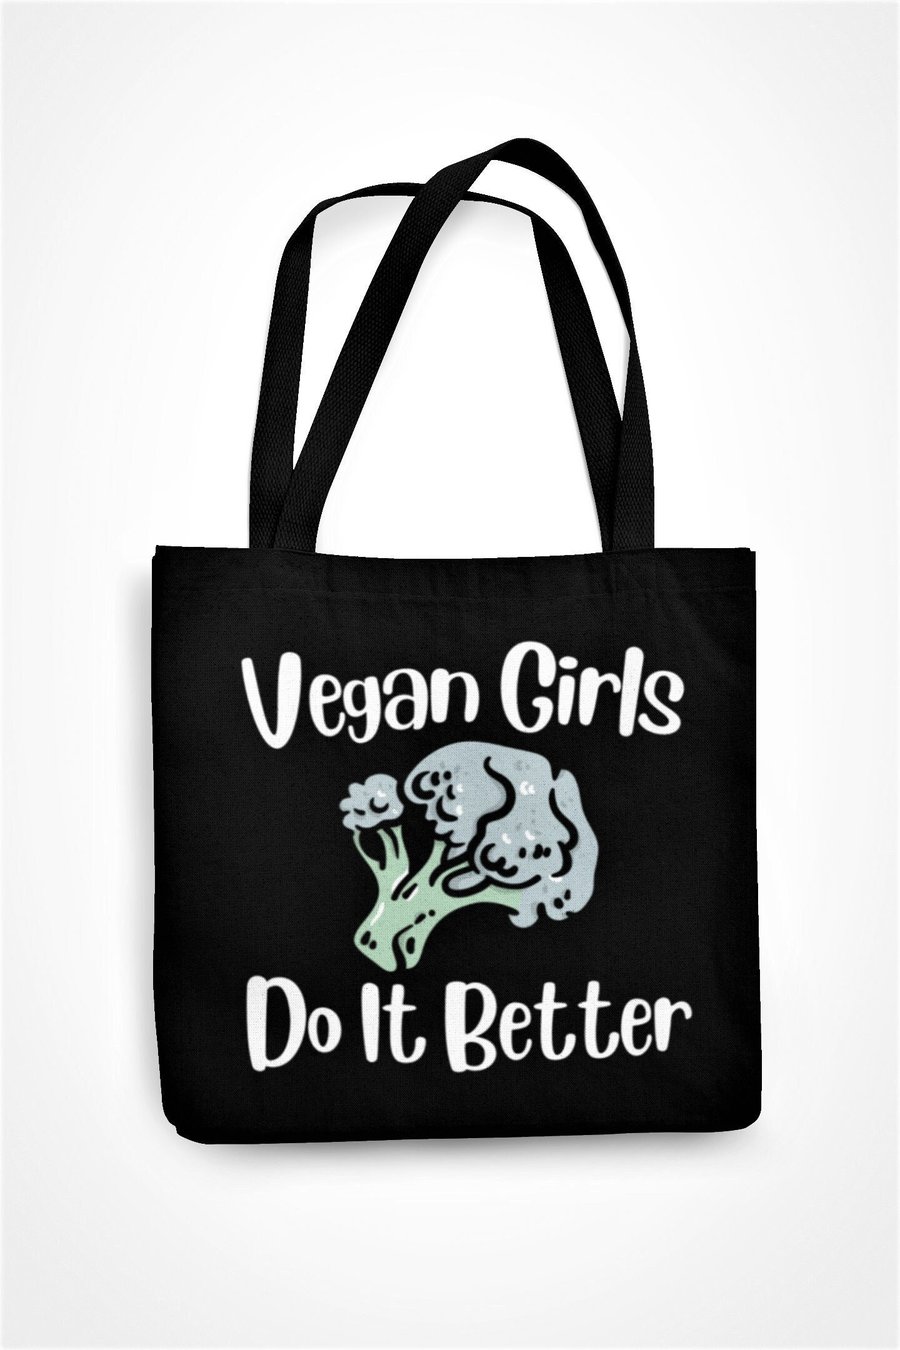 Vegan Girls Do It Better Tote Bag Sassy Vegan Eco Shopping Bag Gift For friend